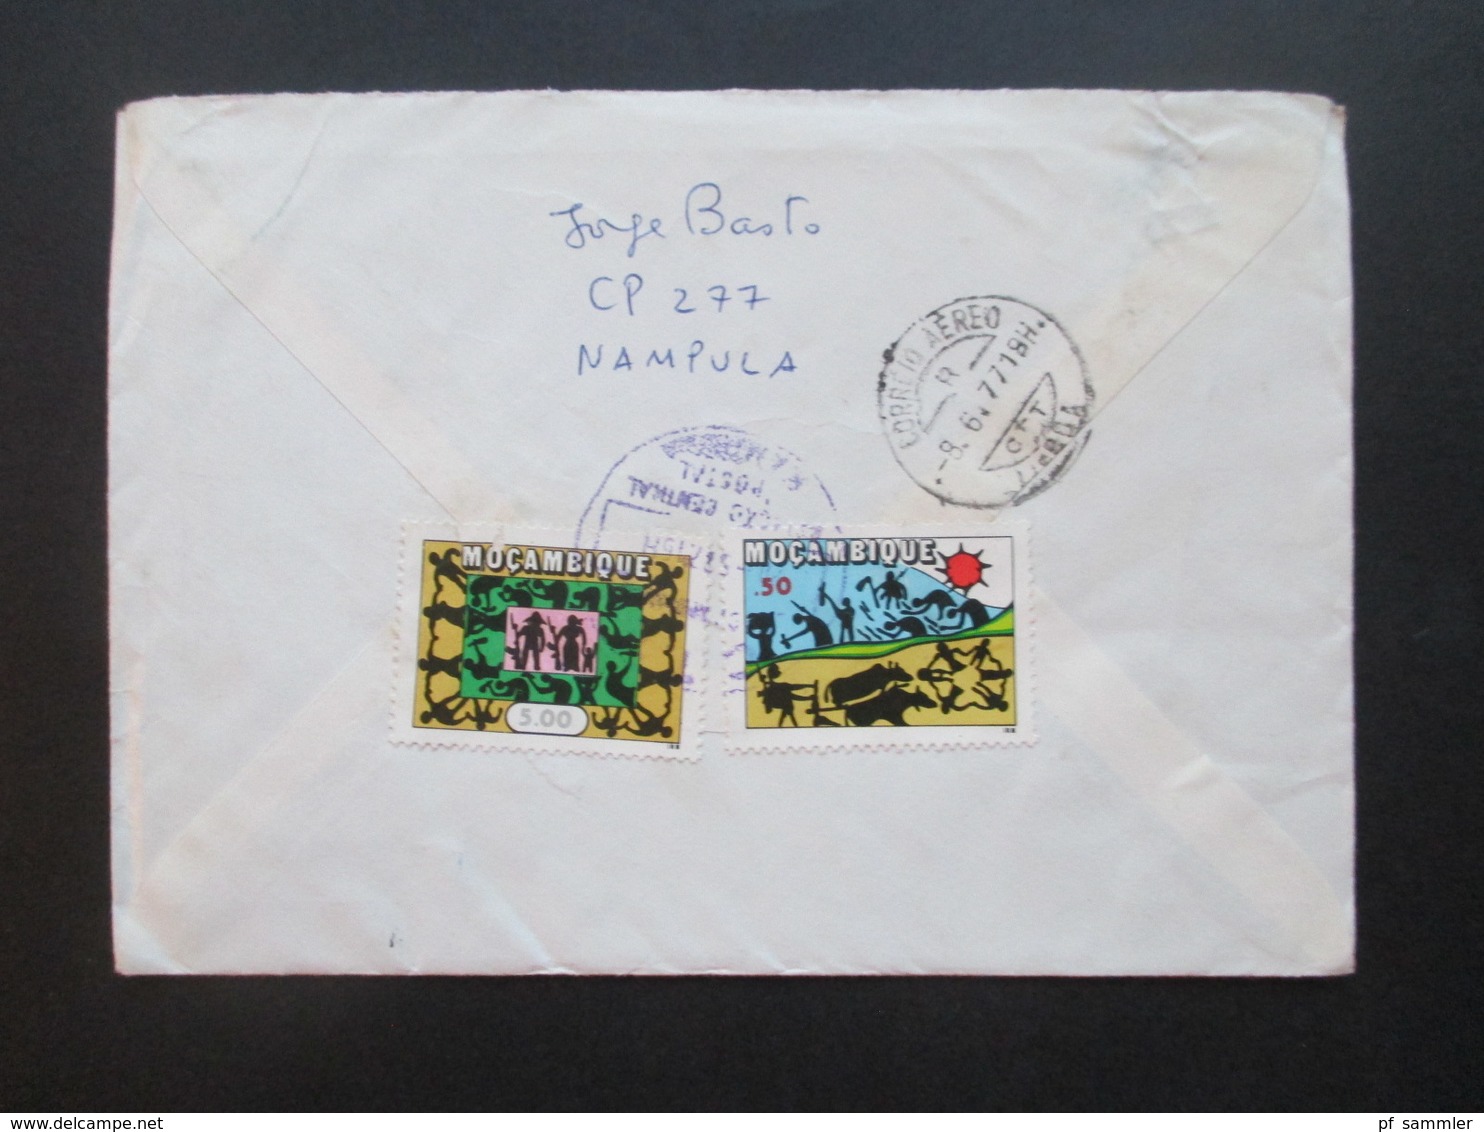 Mosambik / Mocambique 1977 Einschreiben Nampula In Die DDR Luftpost / Air Mail über Lisboa Portugal - Mozambico